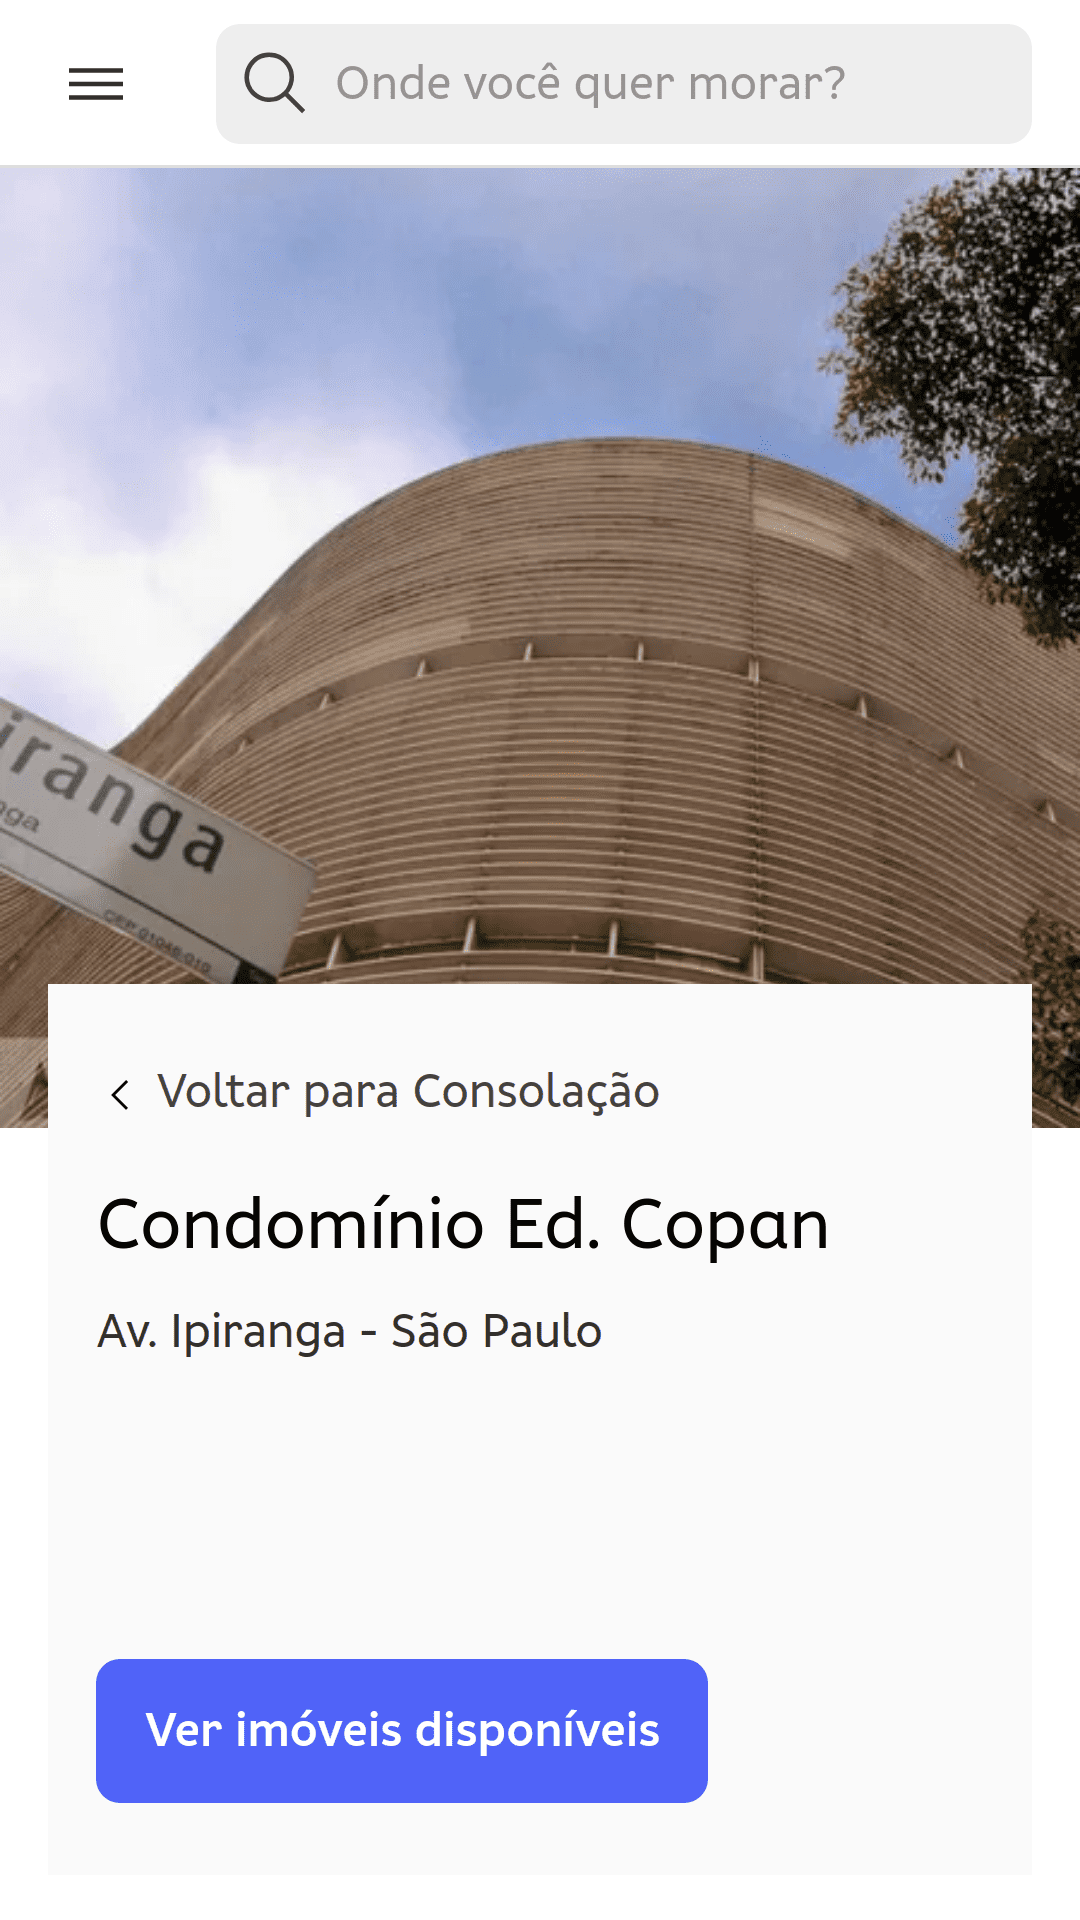 صفحه کاندومینیوم برای Edifício Copan (سائوپائولو، برزیل). عکسی که از سطح زمین گرفته شده است، منحنی های سازه ساختمان را نشان می دهد.